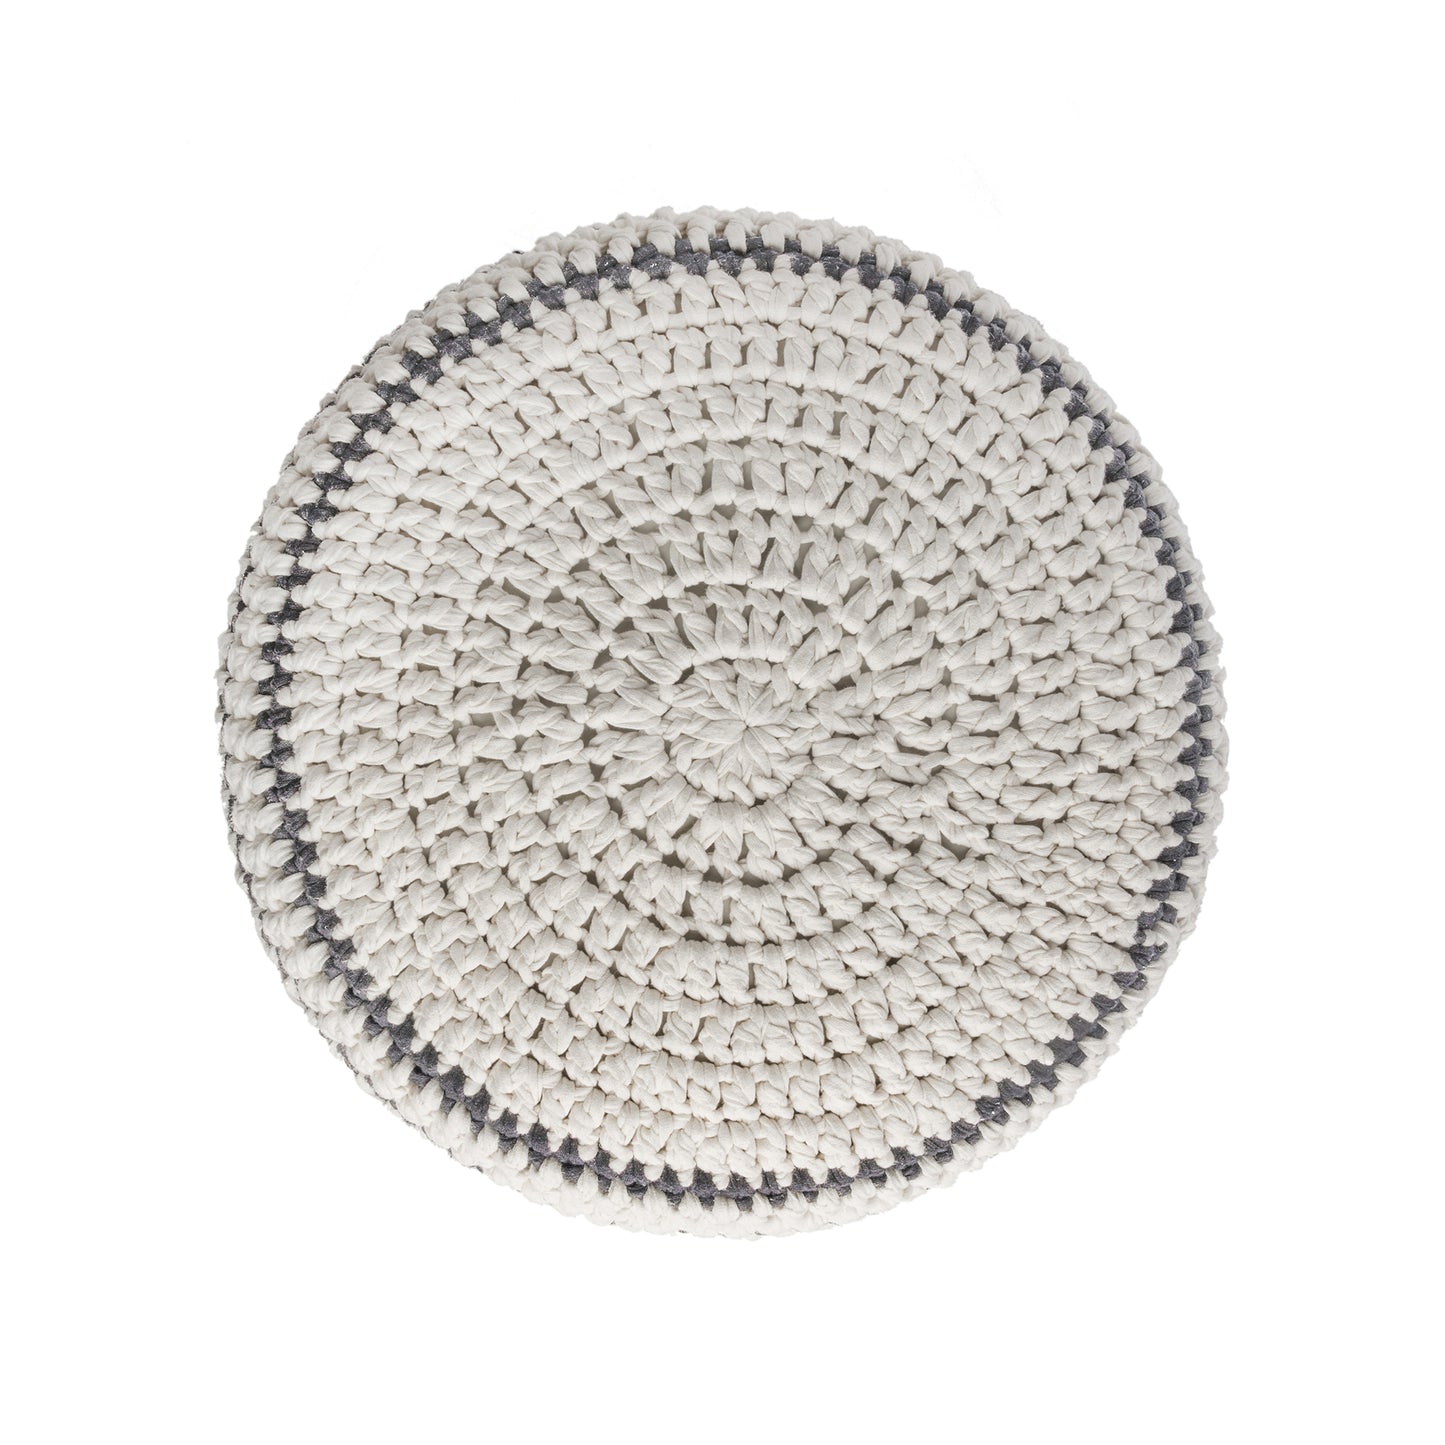 Puff de crochê artesanal listras, Cinza, com fio 100% algodão.  Fechamento com zíper, possibilitando a remoção da capa para lavagem.  Dimensões: Altura - 30cm; Diâmetro - 60cm. 